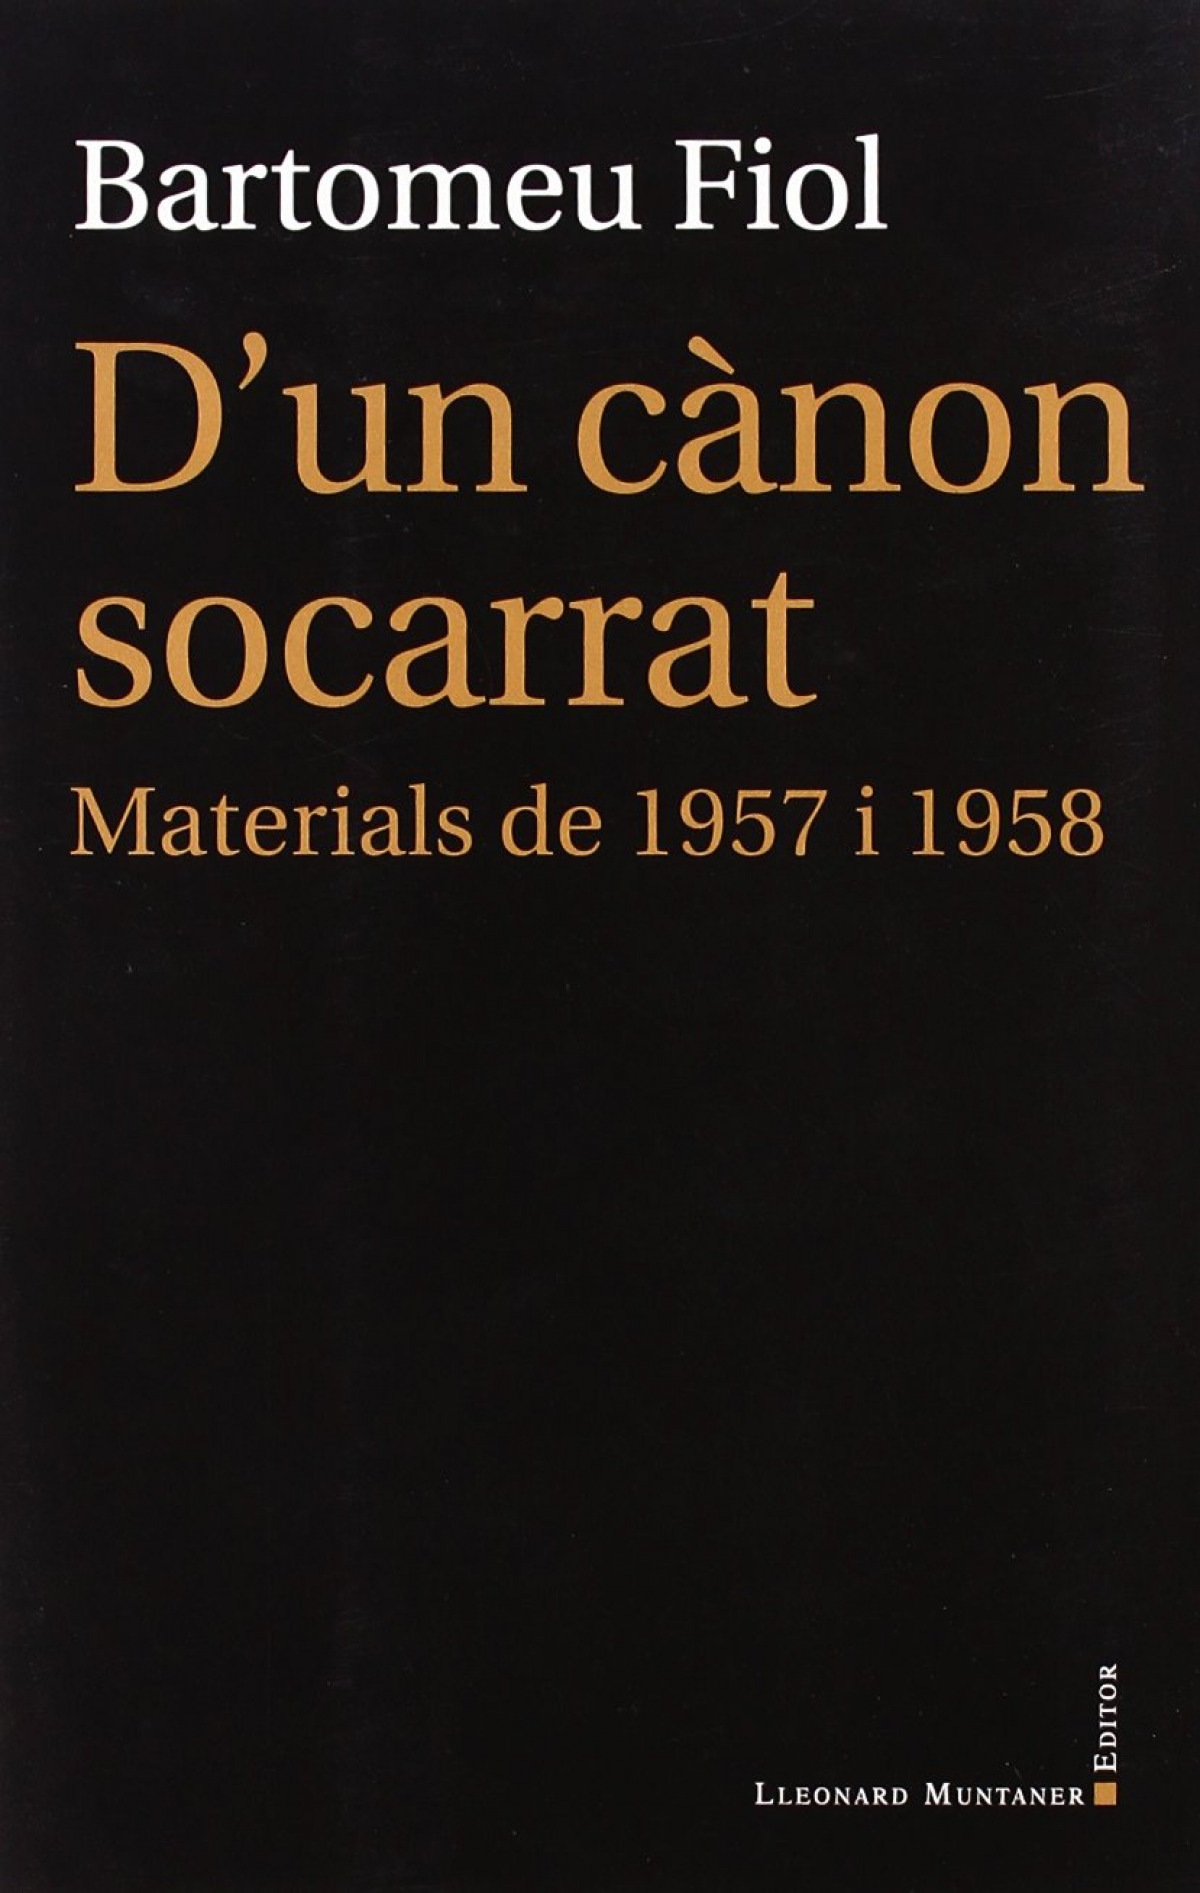 D'un cànon socarrat materials de 1957 i 1958 - Fiol, Bartomeu